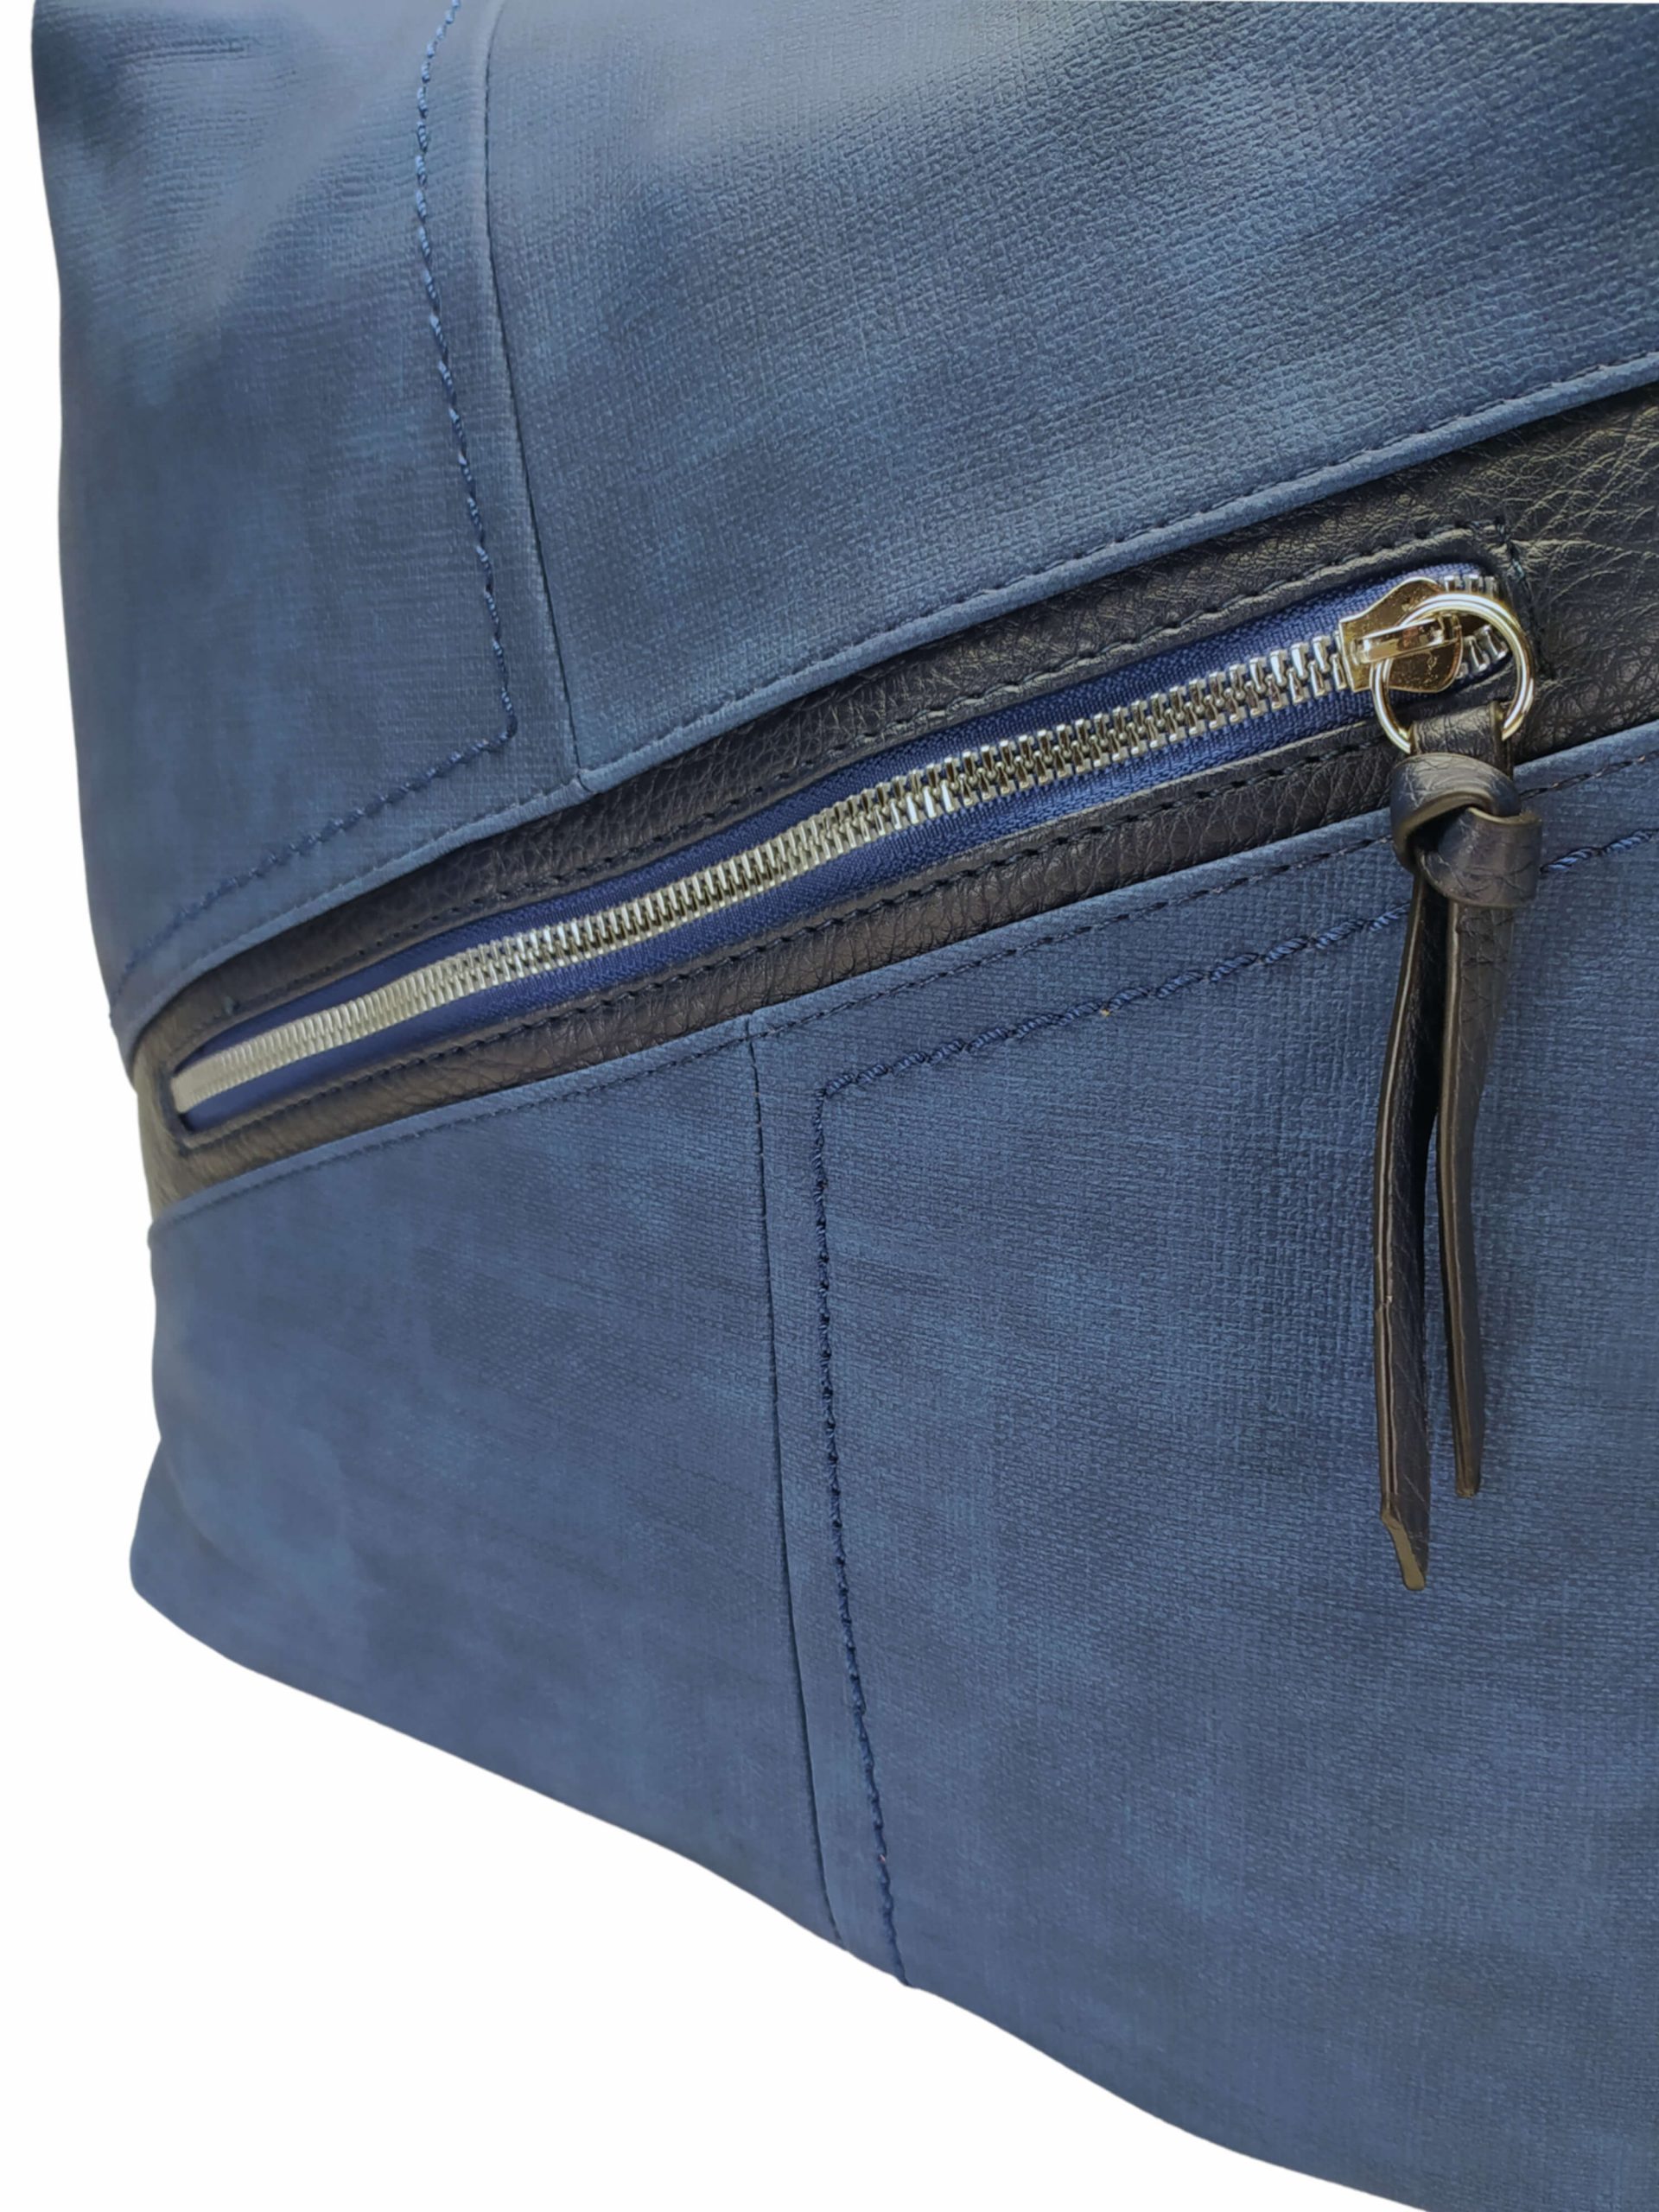 Velký středně modrý kabelko-batoh s šikmou kapsou, Tapple, H18077N, detail kabelko-batohu 2v1